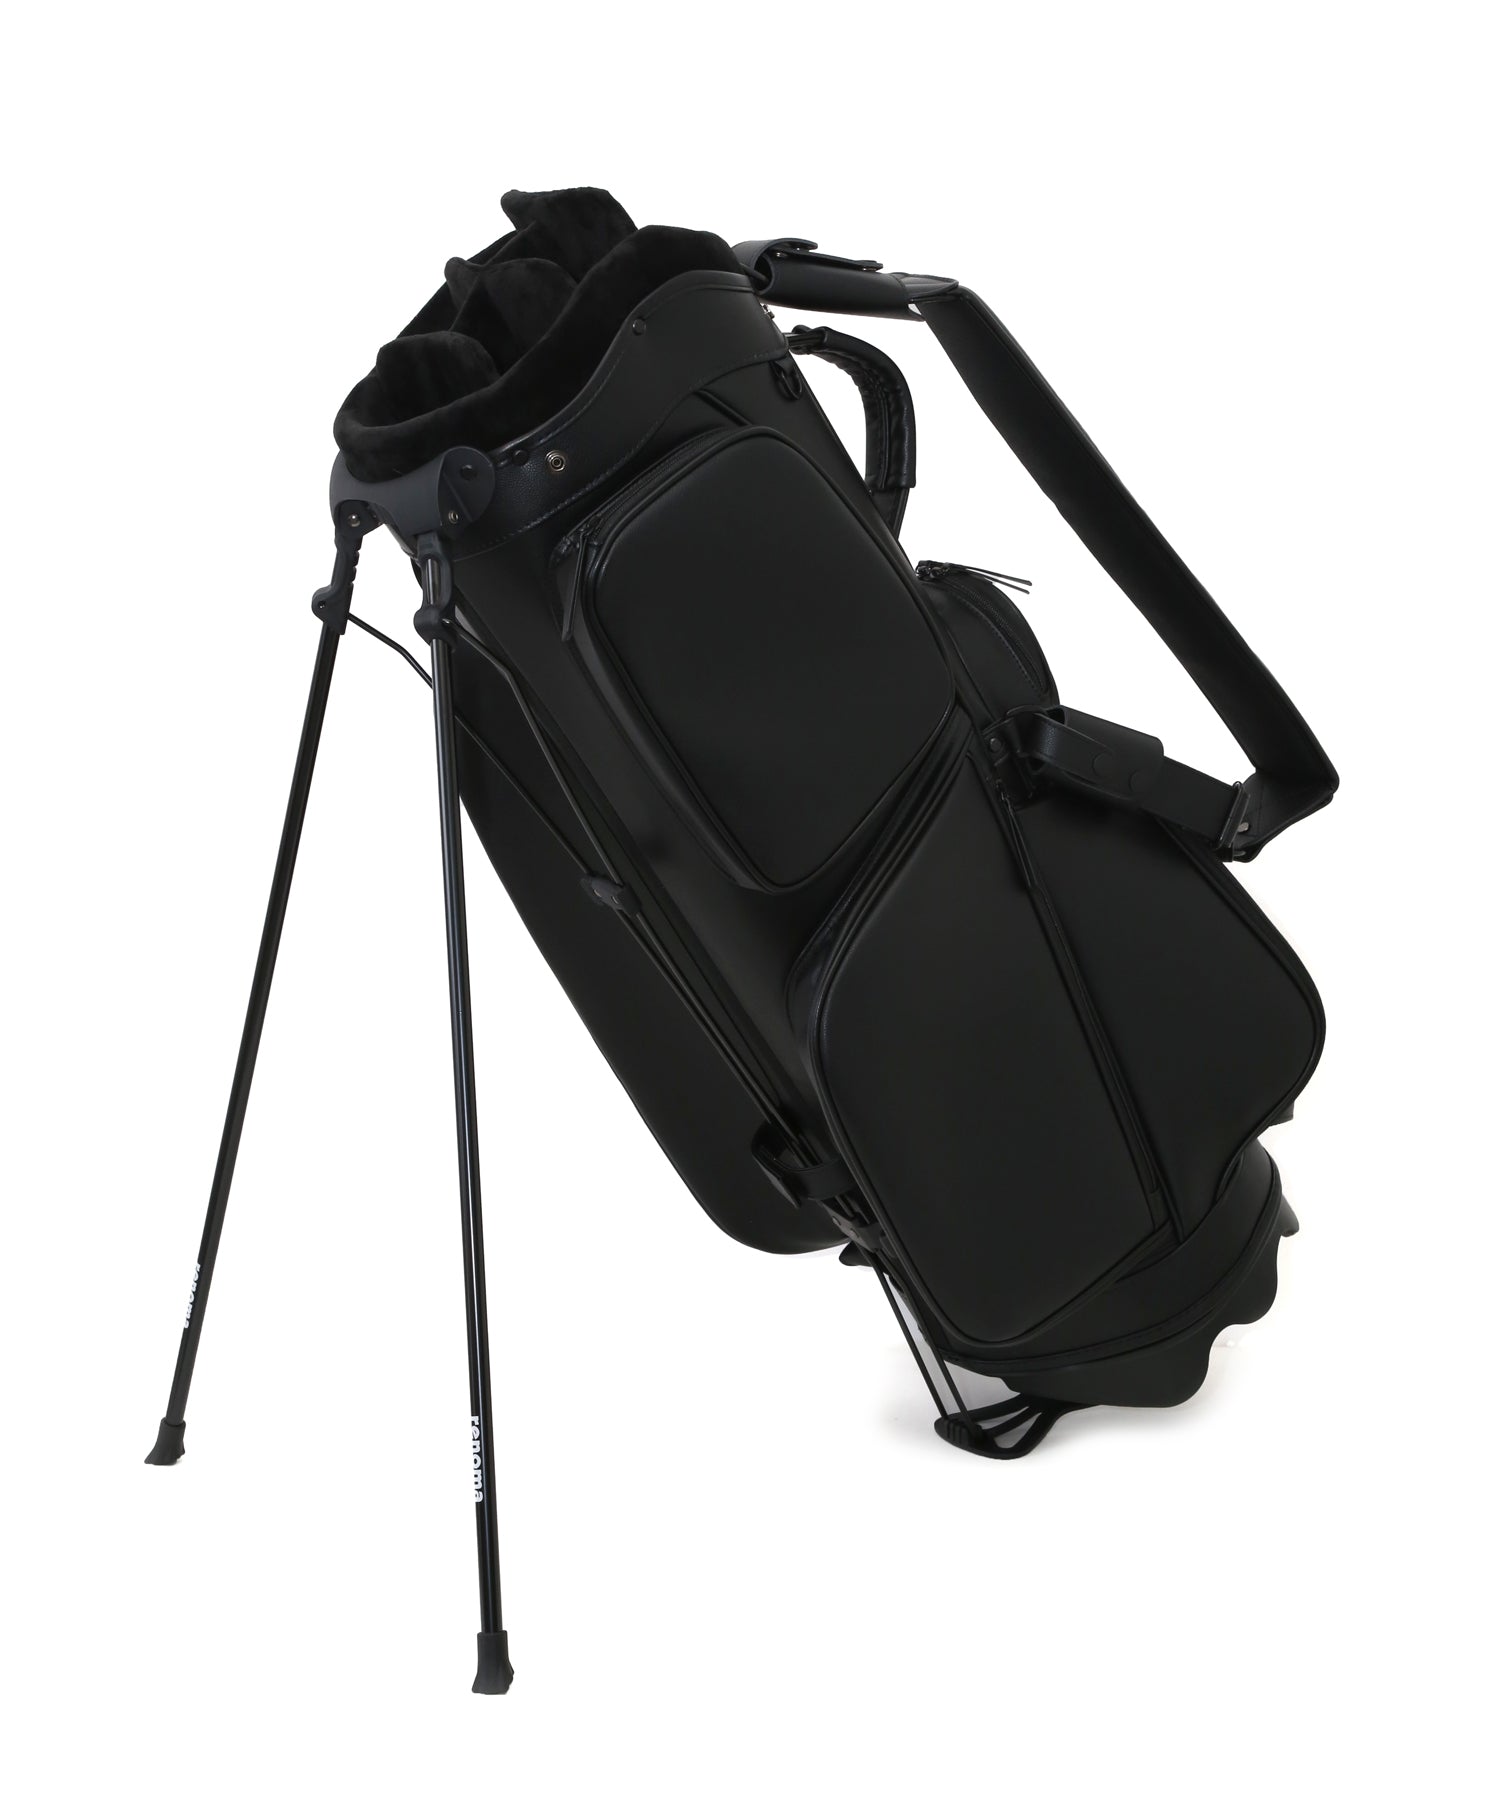 ORIGINAL CADDY BAG BLACK – renoma golf